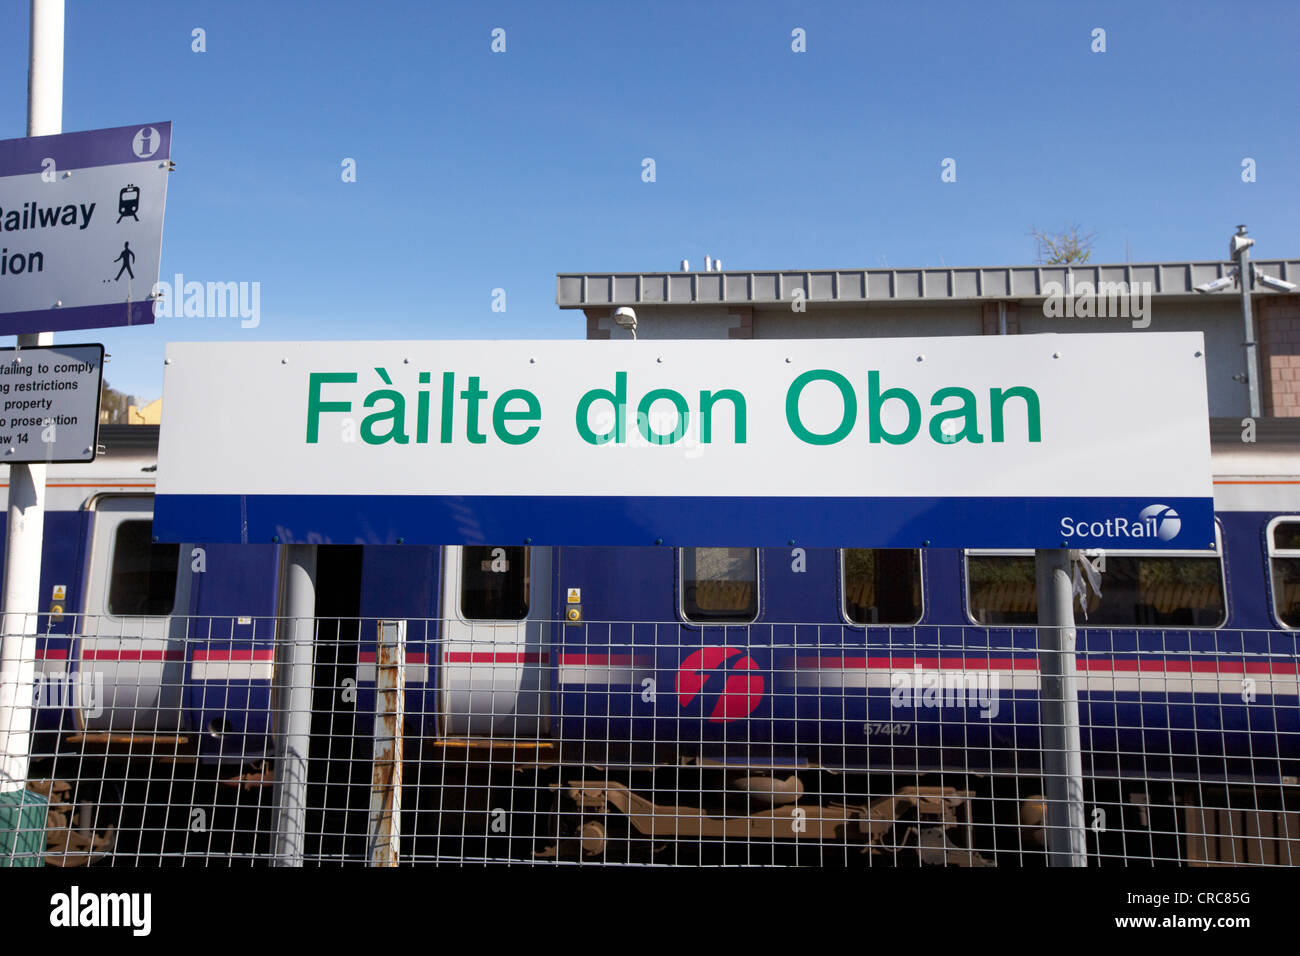 Failte don oban benvenuto a Oban in gaelico scozzese segno a Oban stazione ferroviaria Scotland Regno Unito Foto Stock